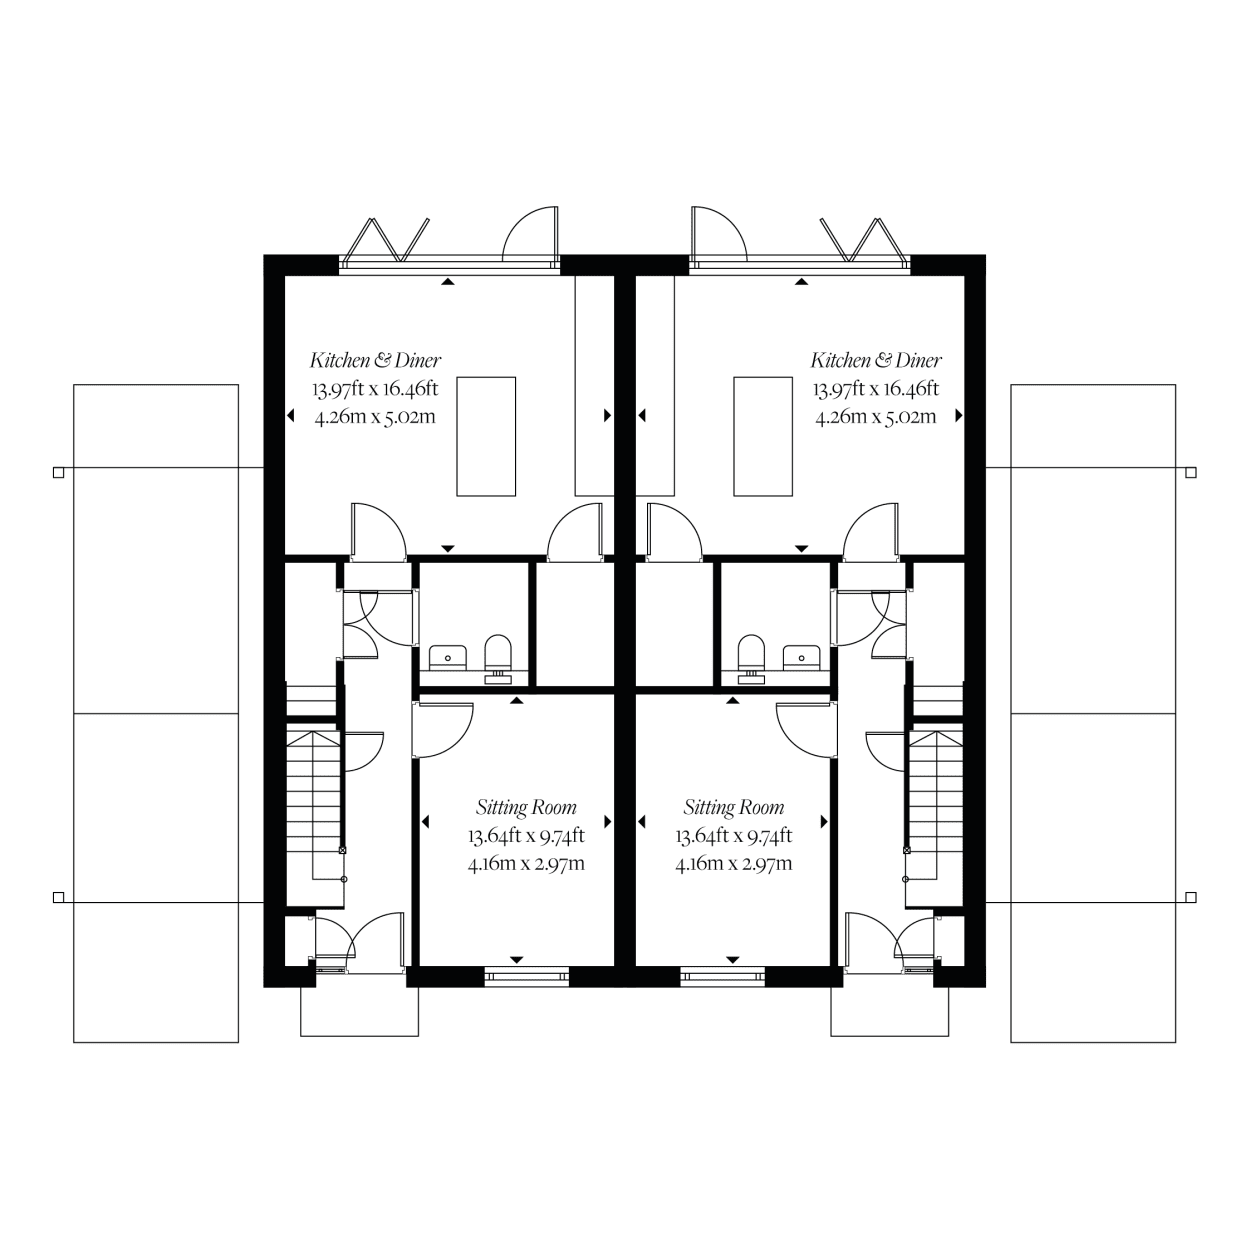 Hanningfield Park Properties - The Mallard - Floor Plan - Second Floor